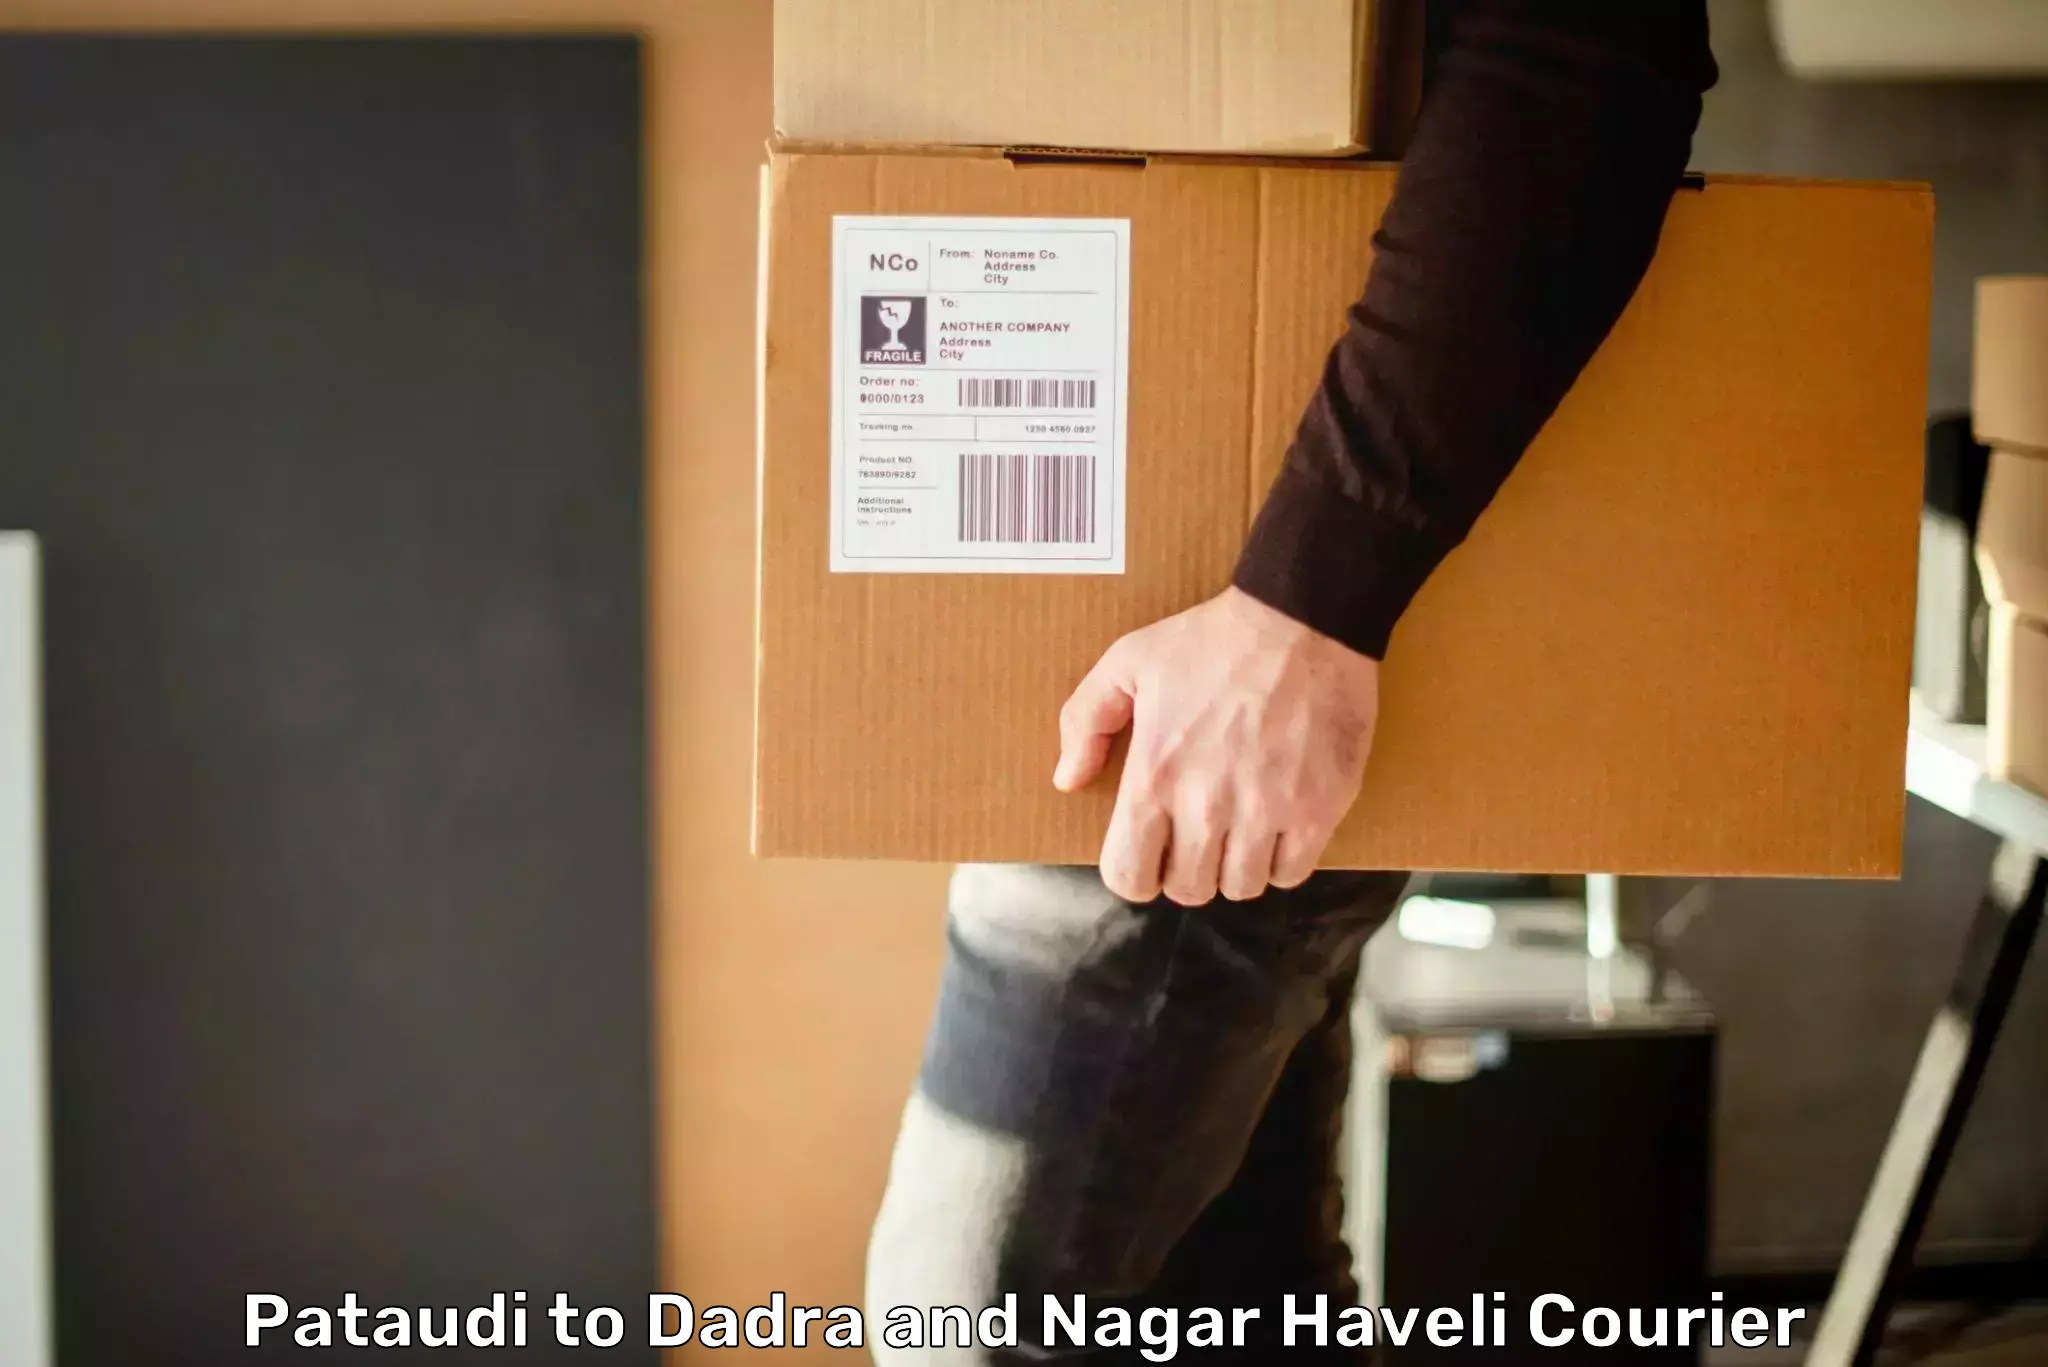 User-friendly delivery service Pataudi to Silvassa